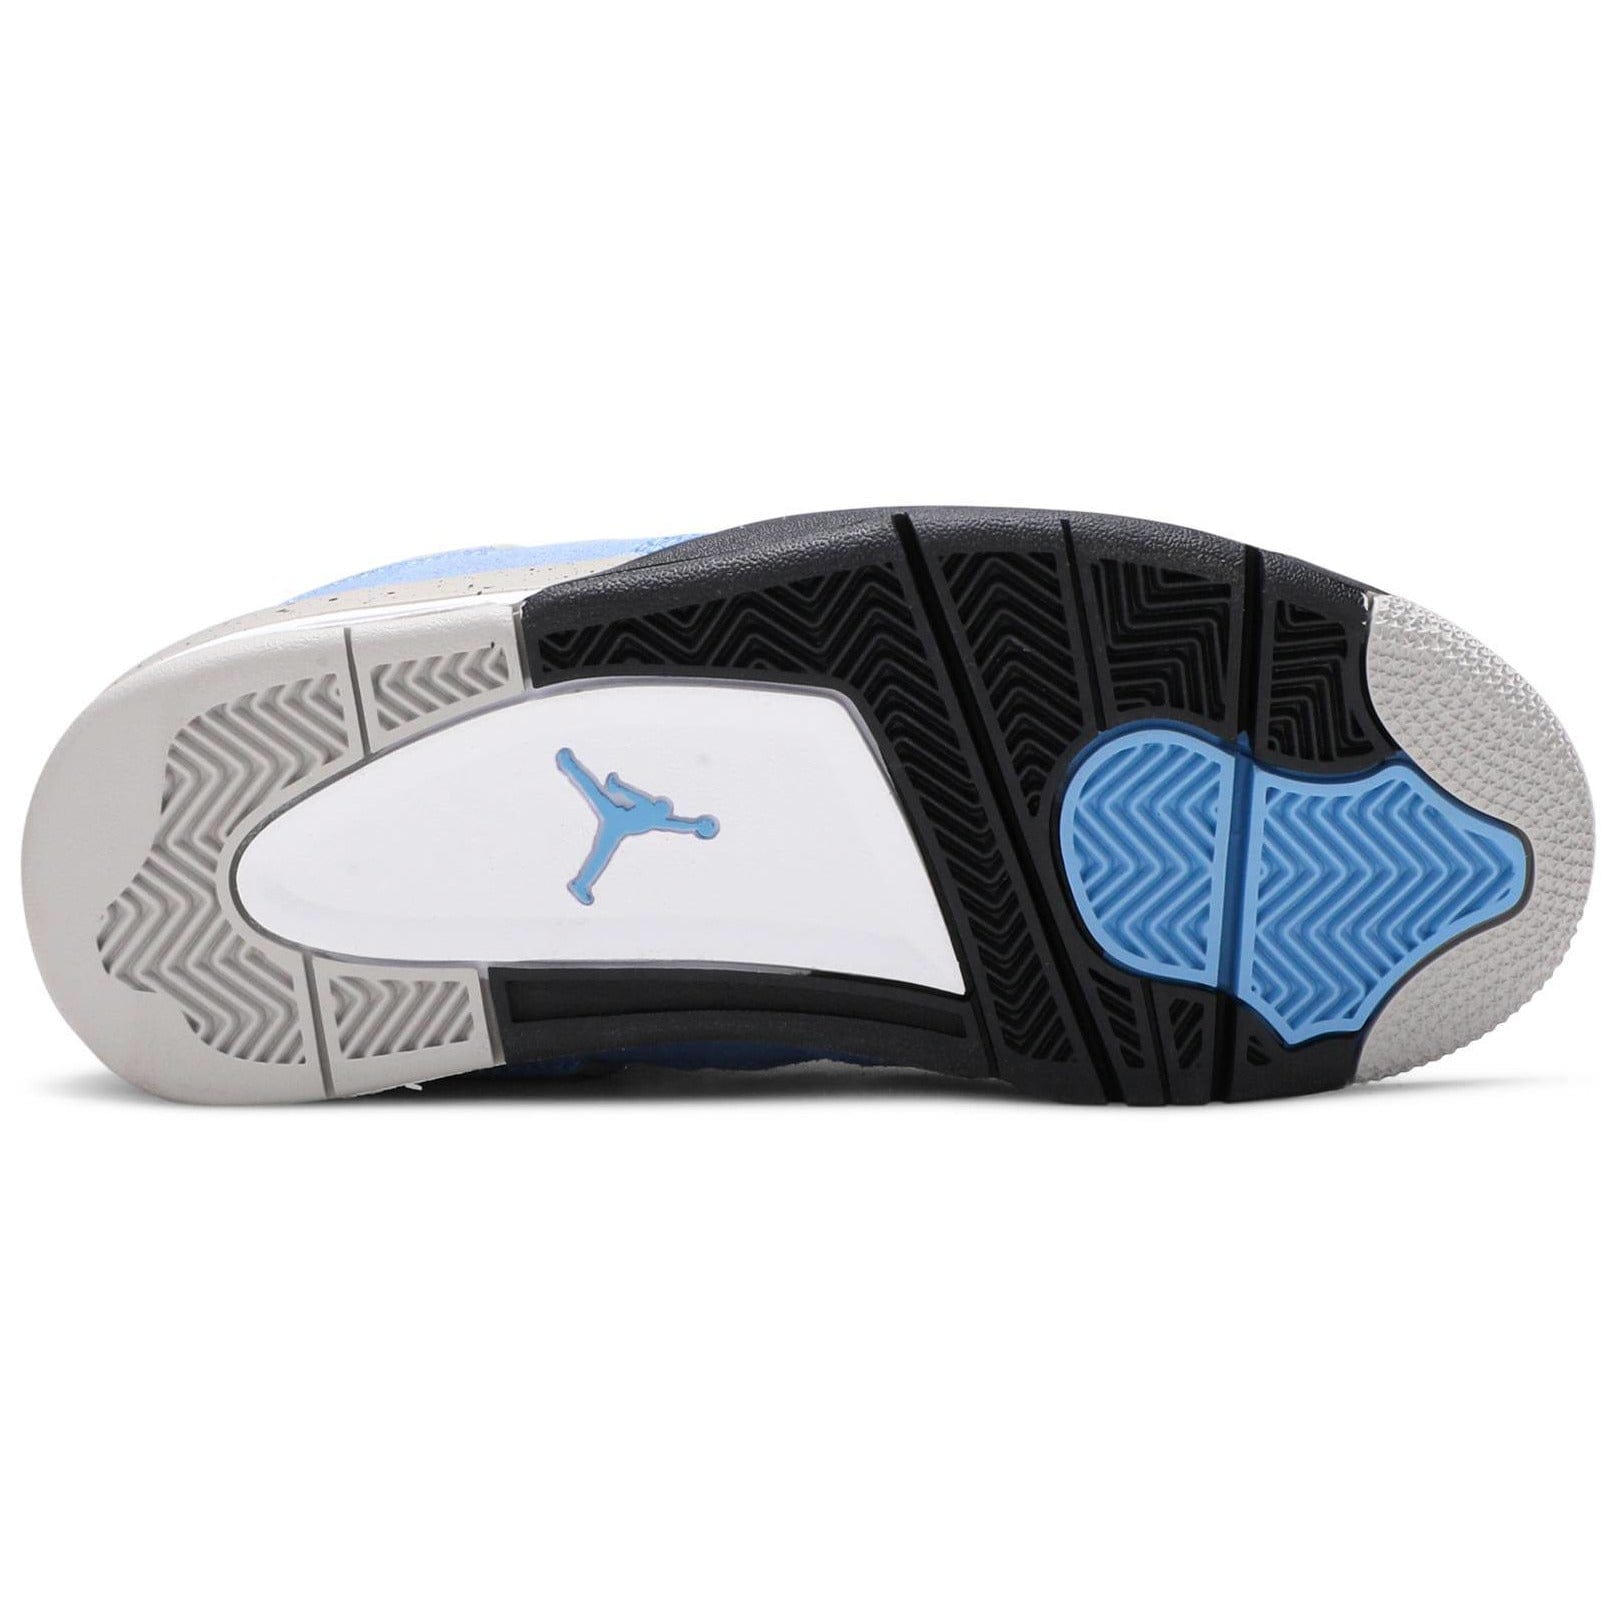 Nike Air Jordan 4 Retro University Blue (GS) Women's